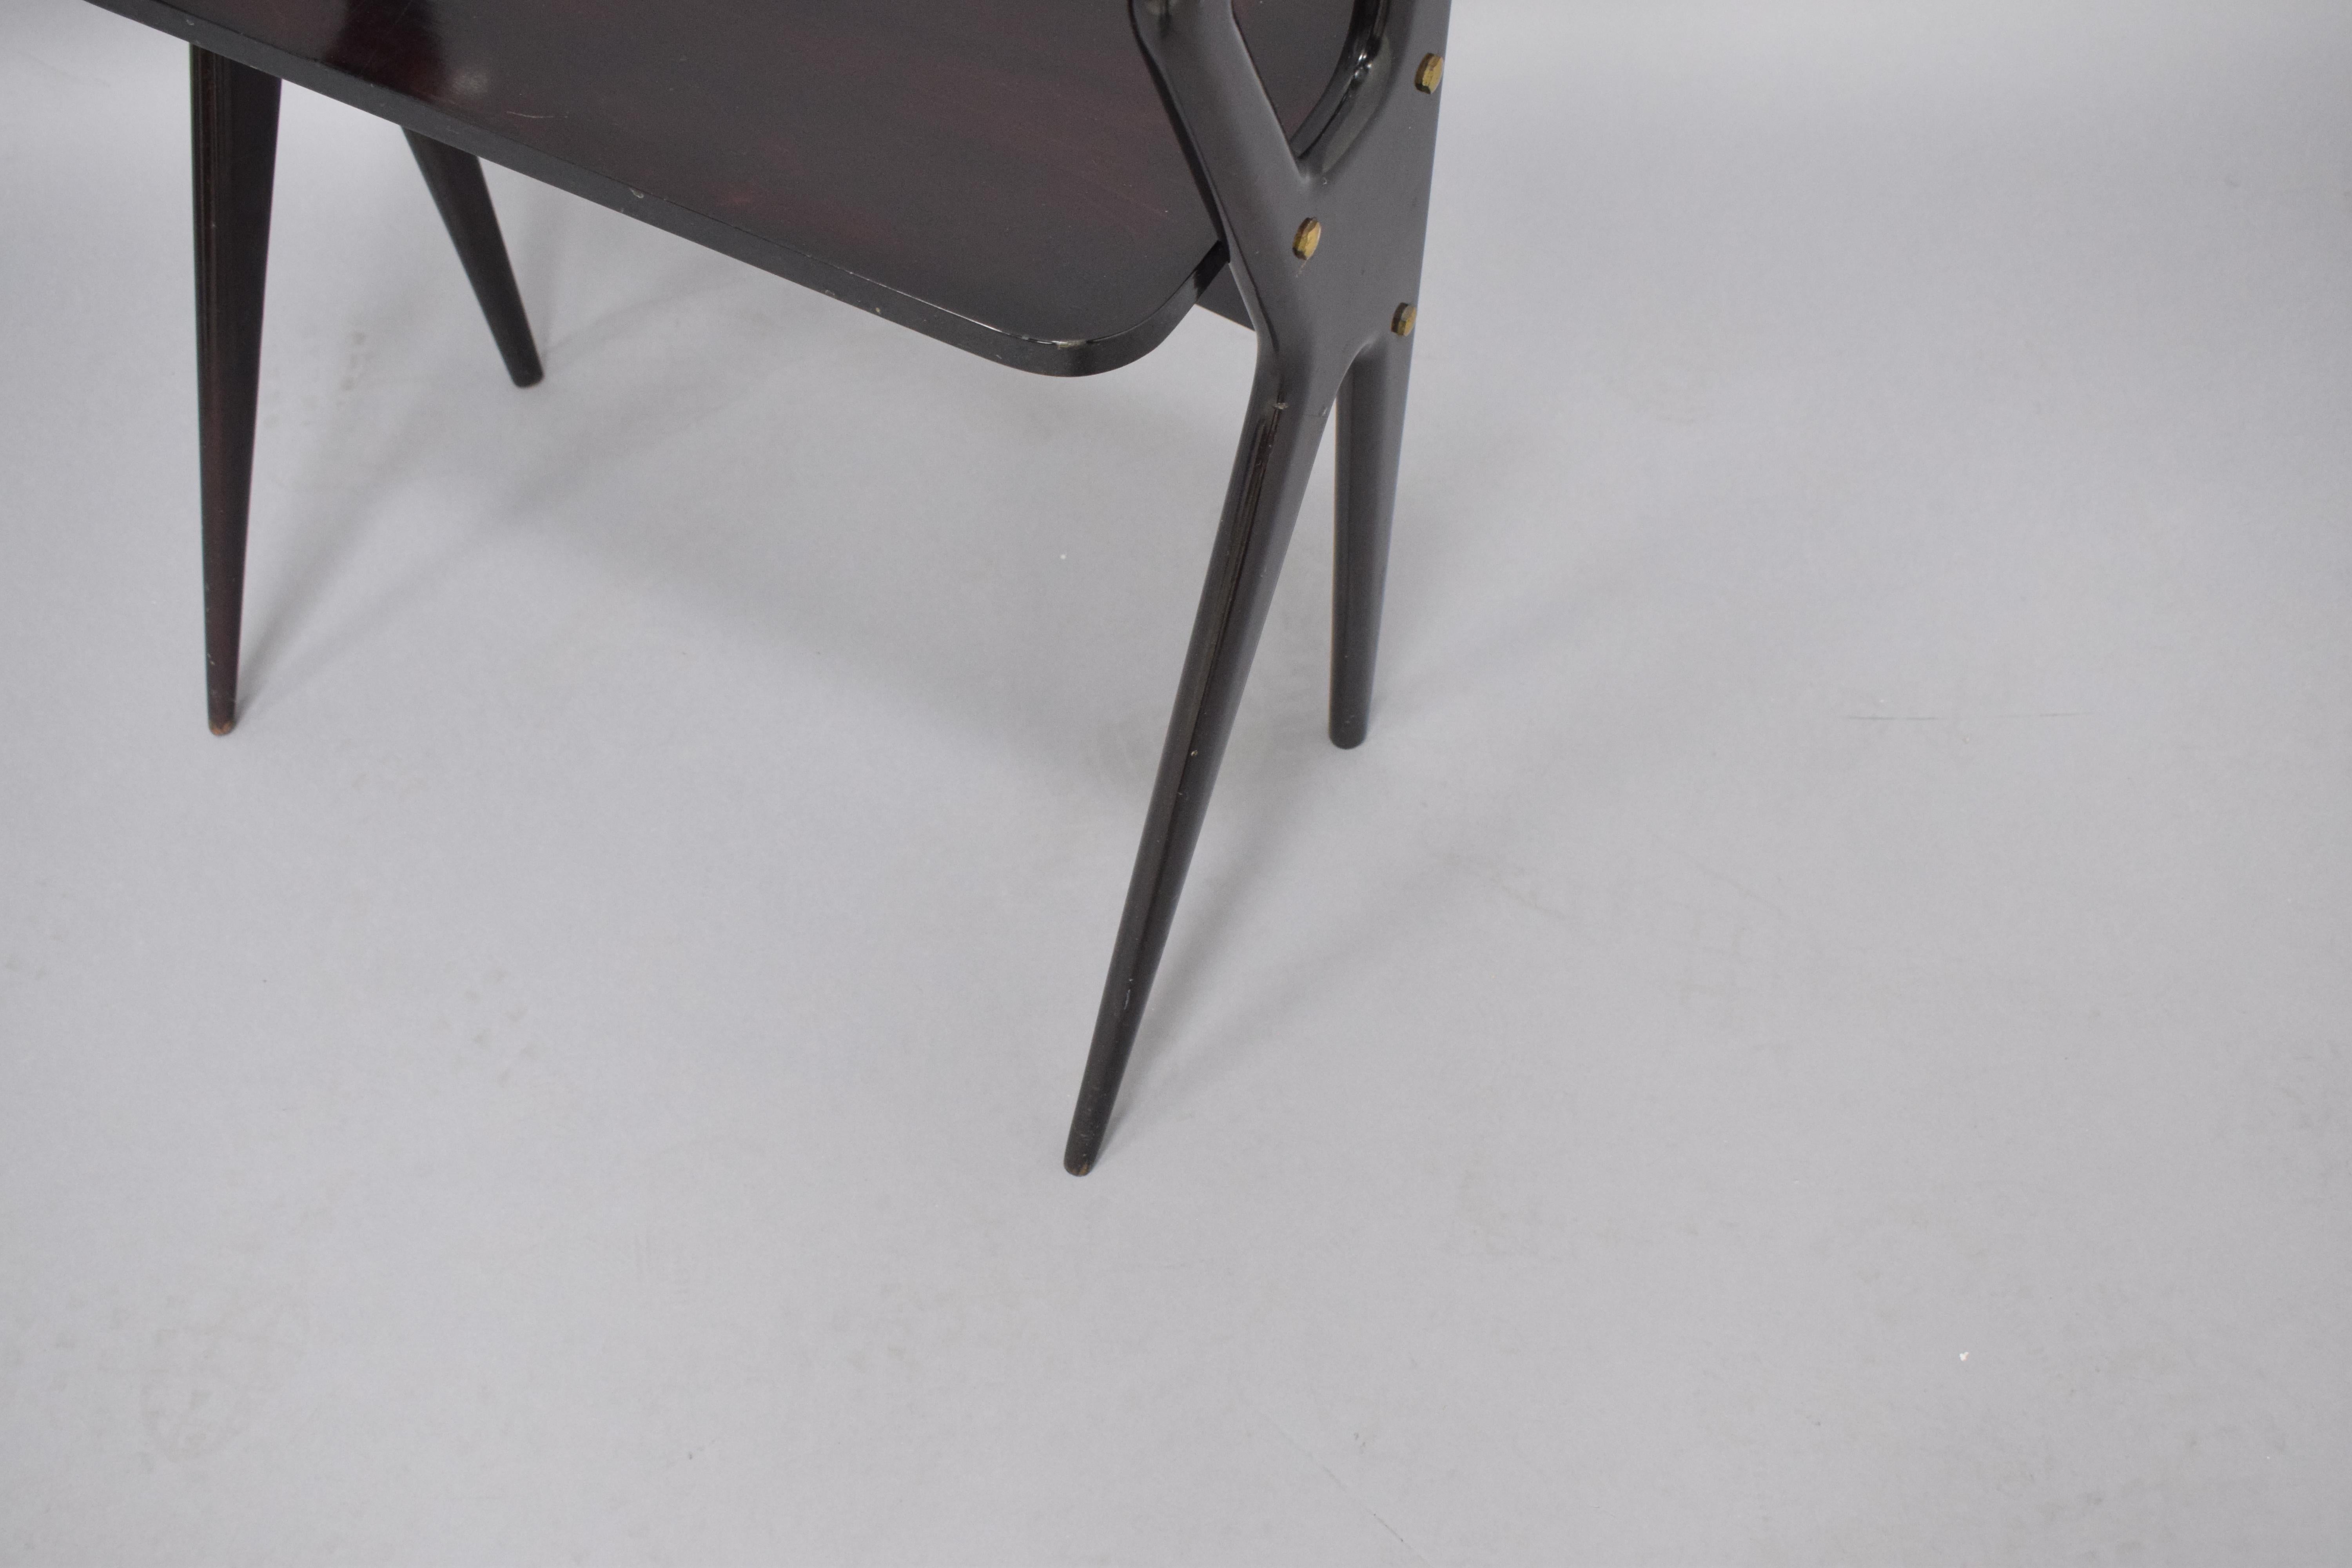 Moderner Beistelltisch und Schreibtisch im Vintage-Stil aus schwarz lackiertem Holz mit Glasplatte, unterer Holzplatte und Messingbeschlägen. Dieses Möbelstück zeigt sowohl gerade als auch konisch zulaufende Beine, ein gängiges Designmerkmal der